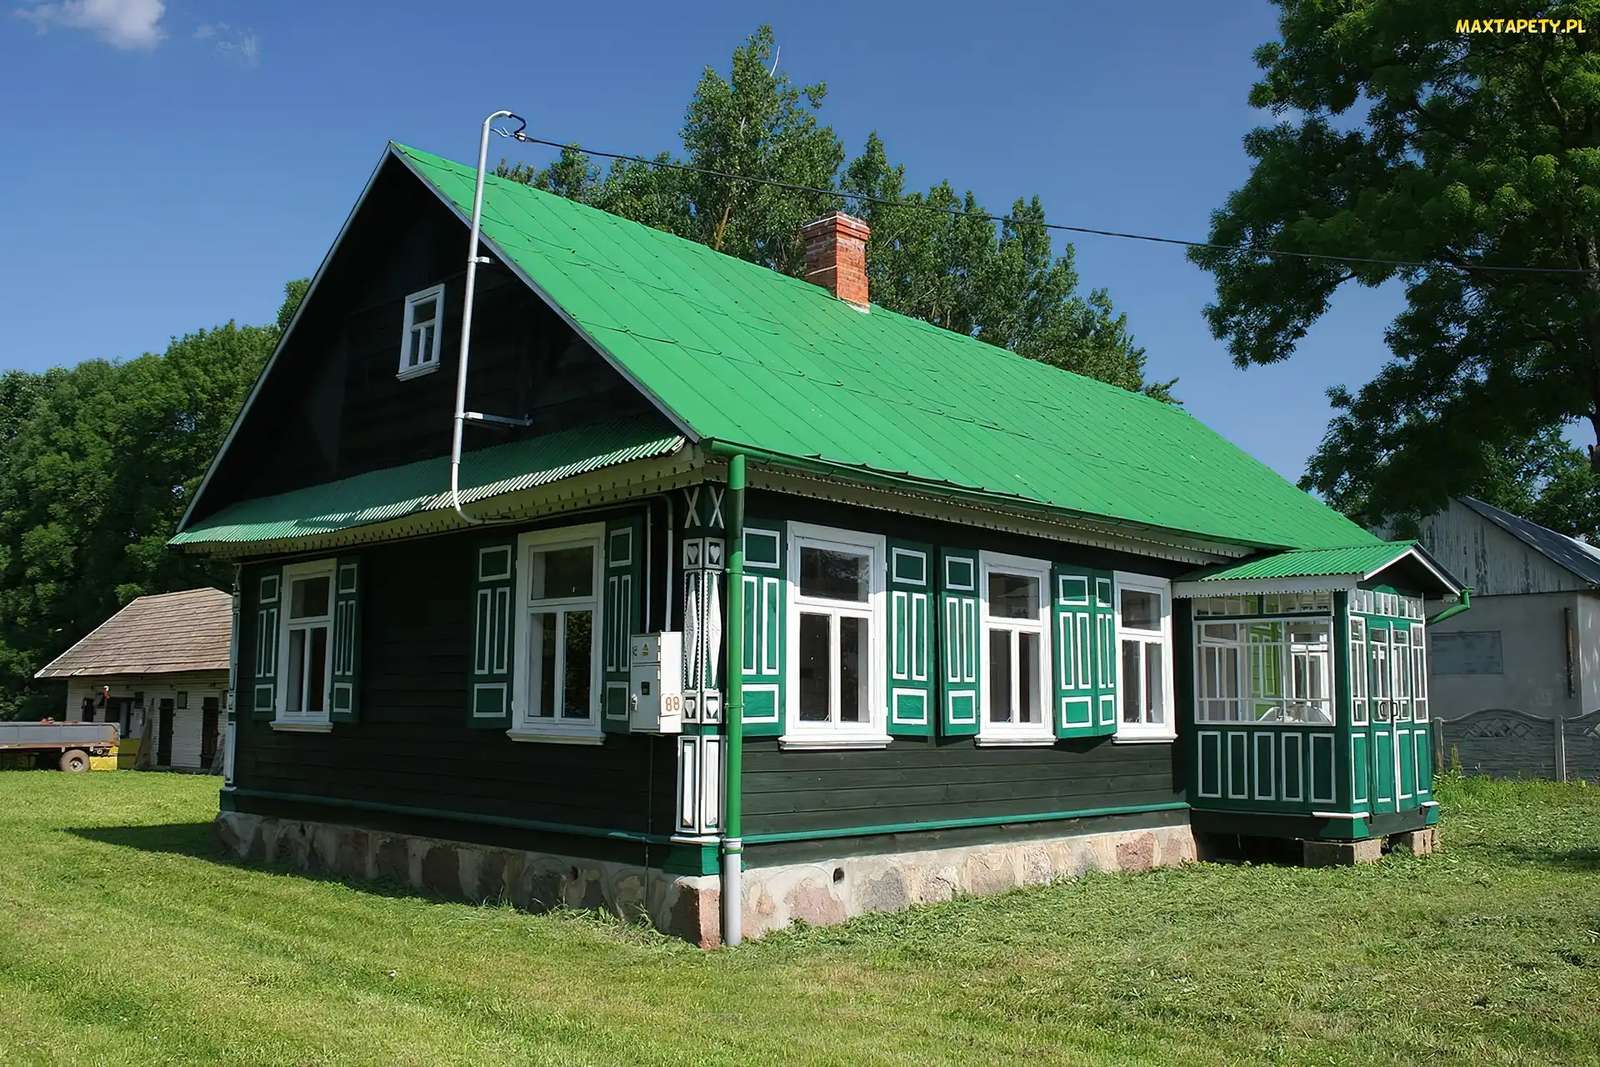 Cabaña de madera verde con contraventanas rompecabezas en línea